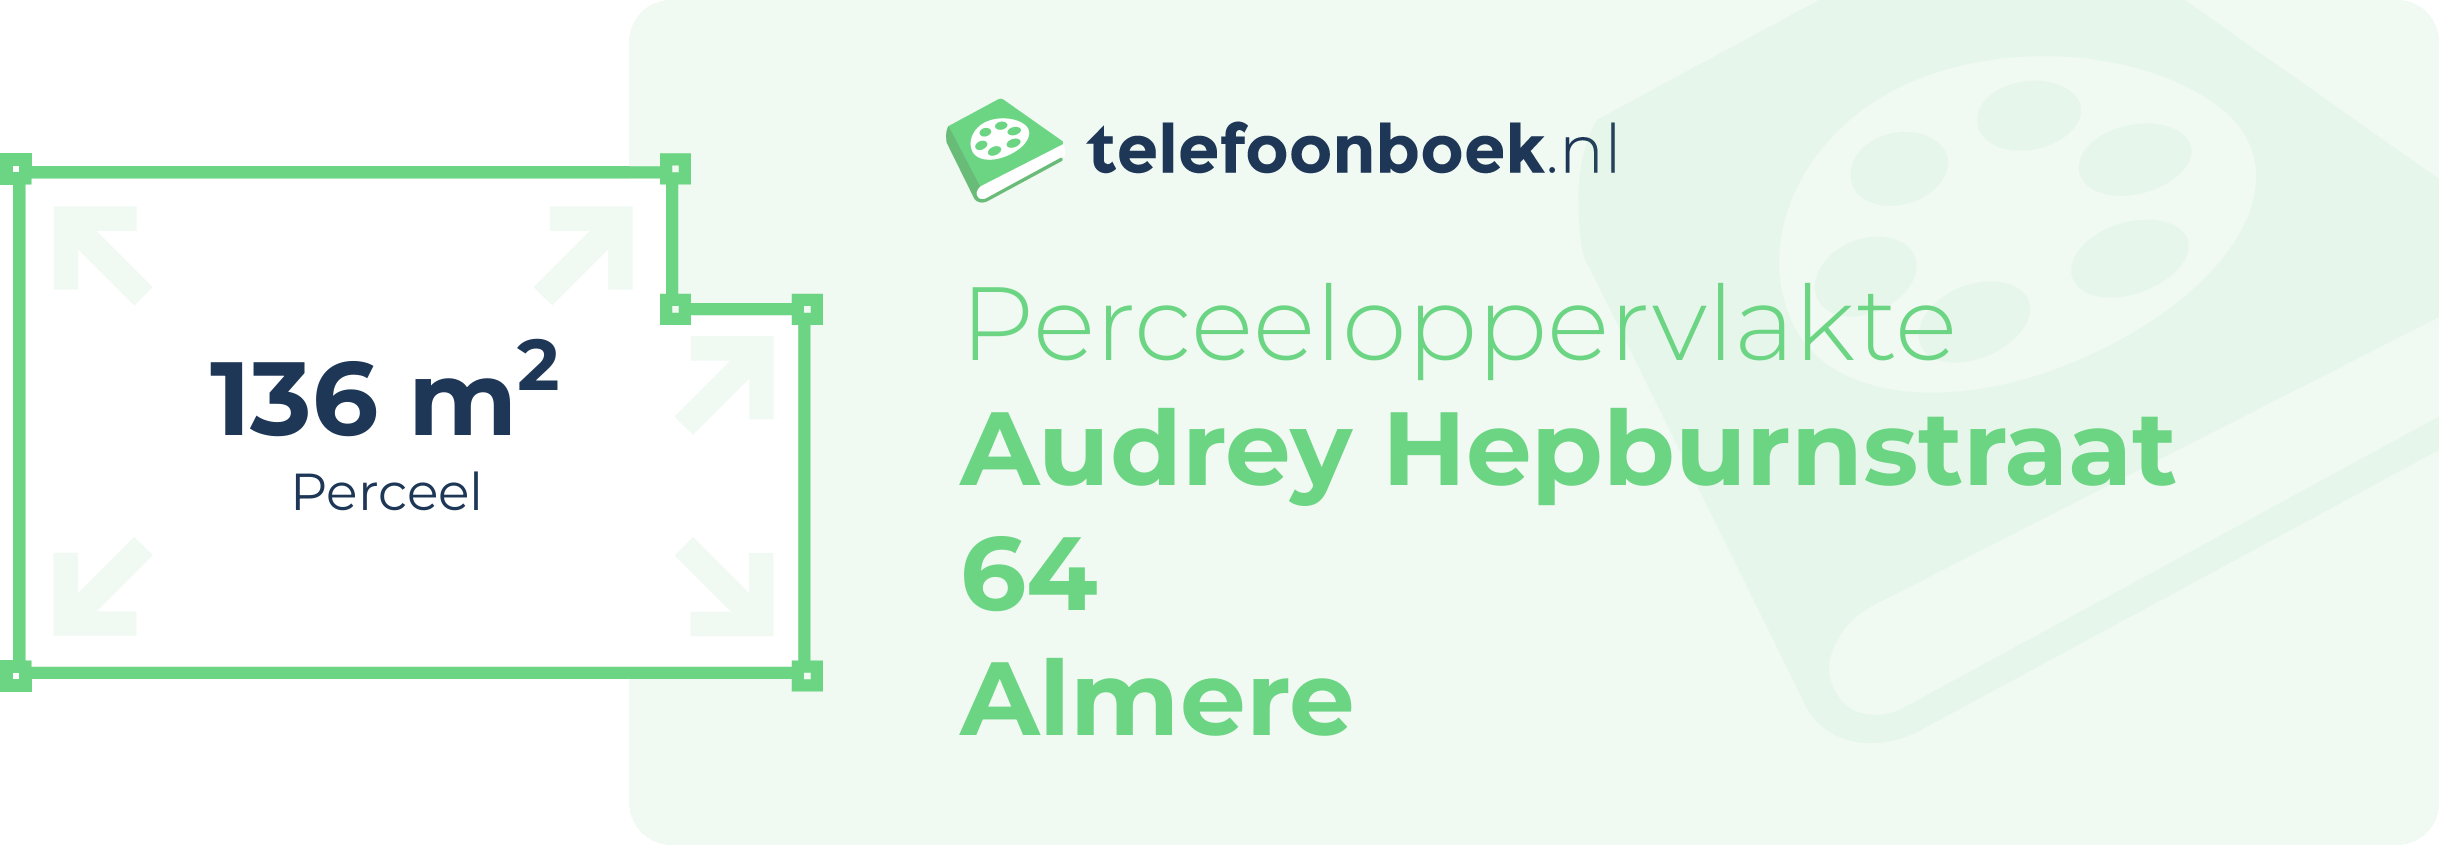 Perceeloppervlakte Audrey Hepburnstraat 64 Almere